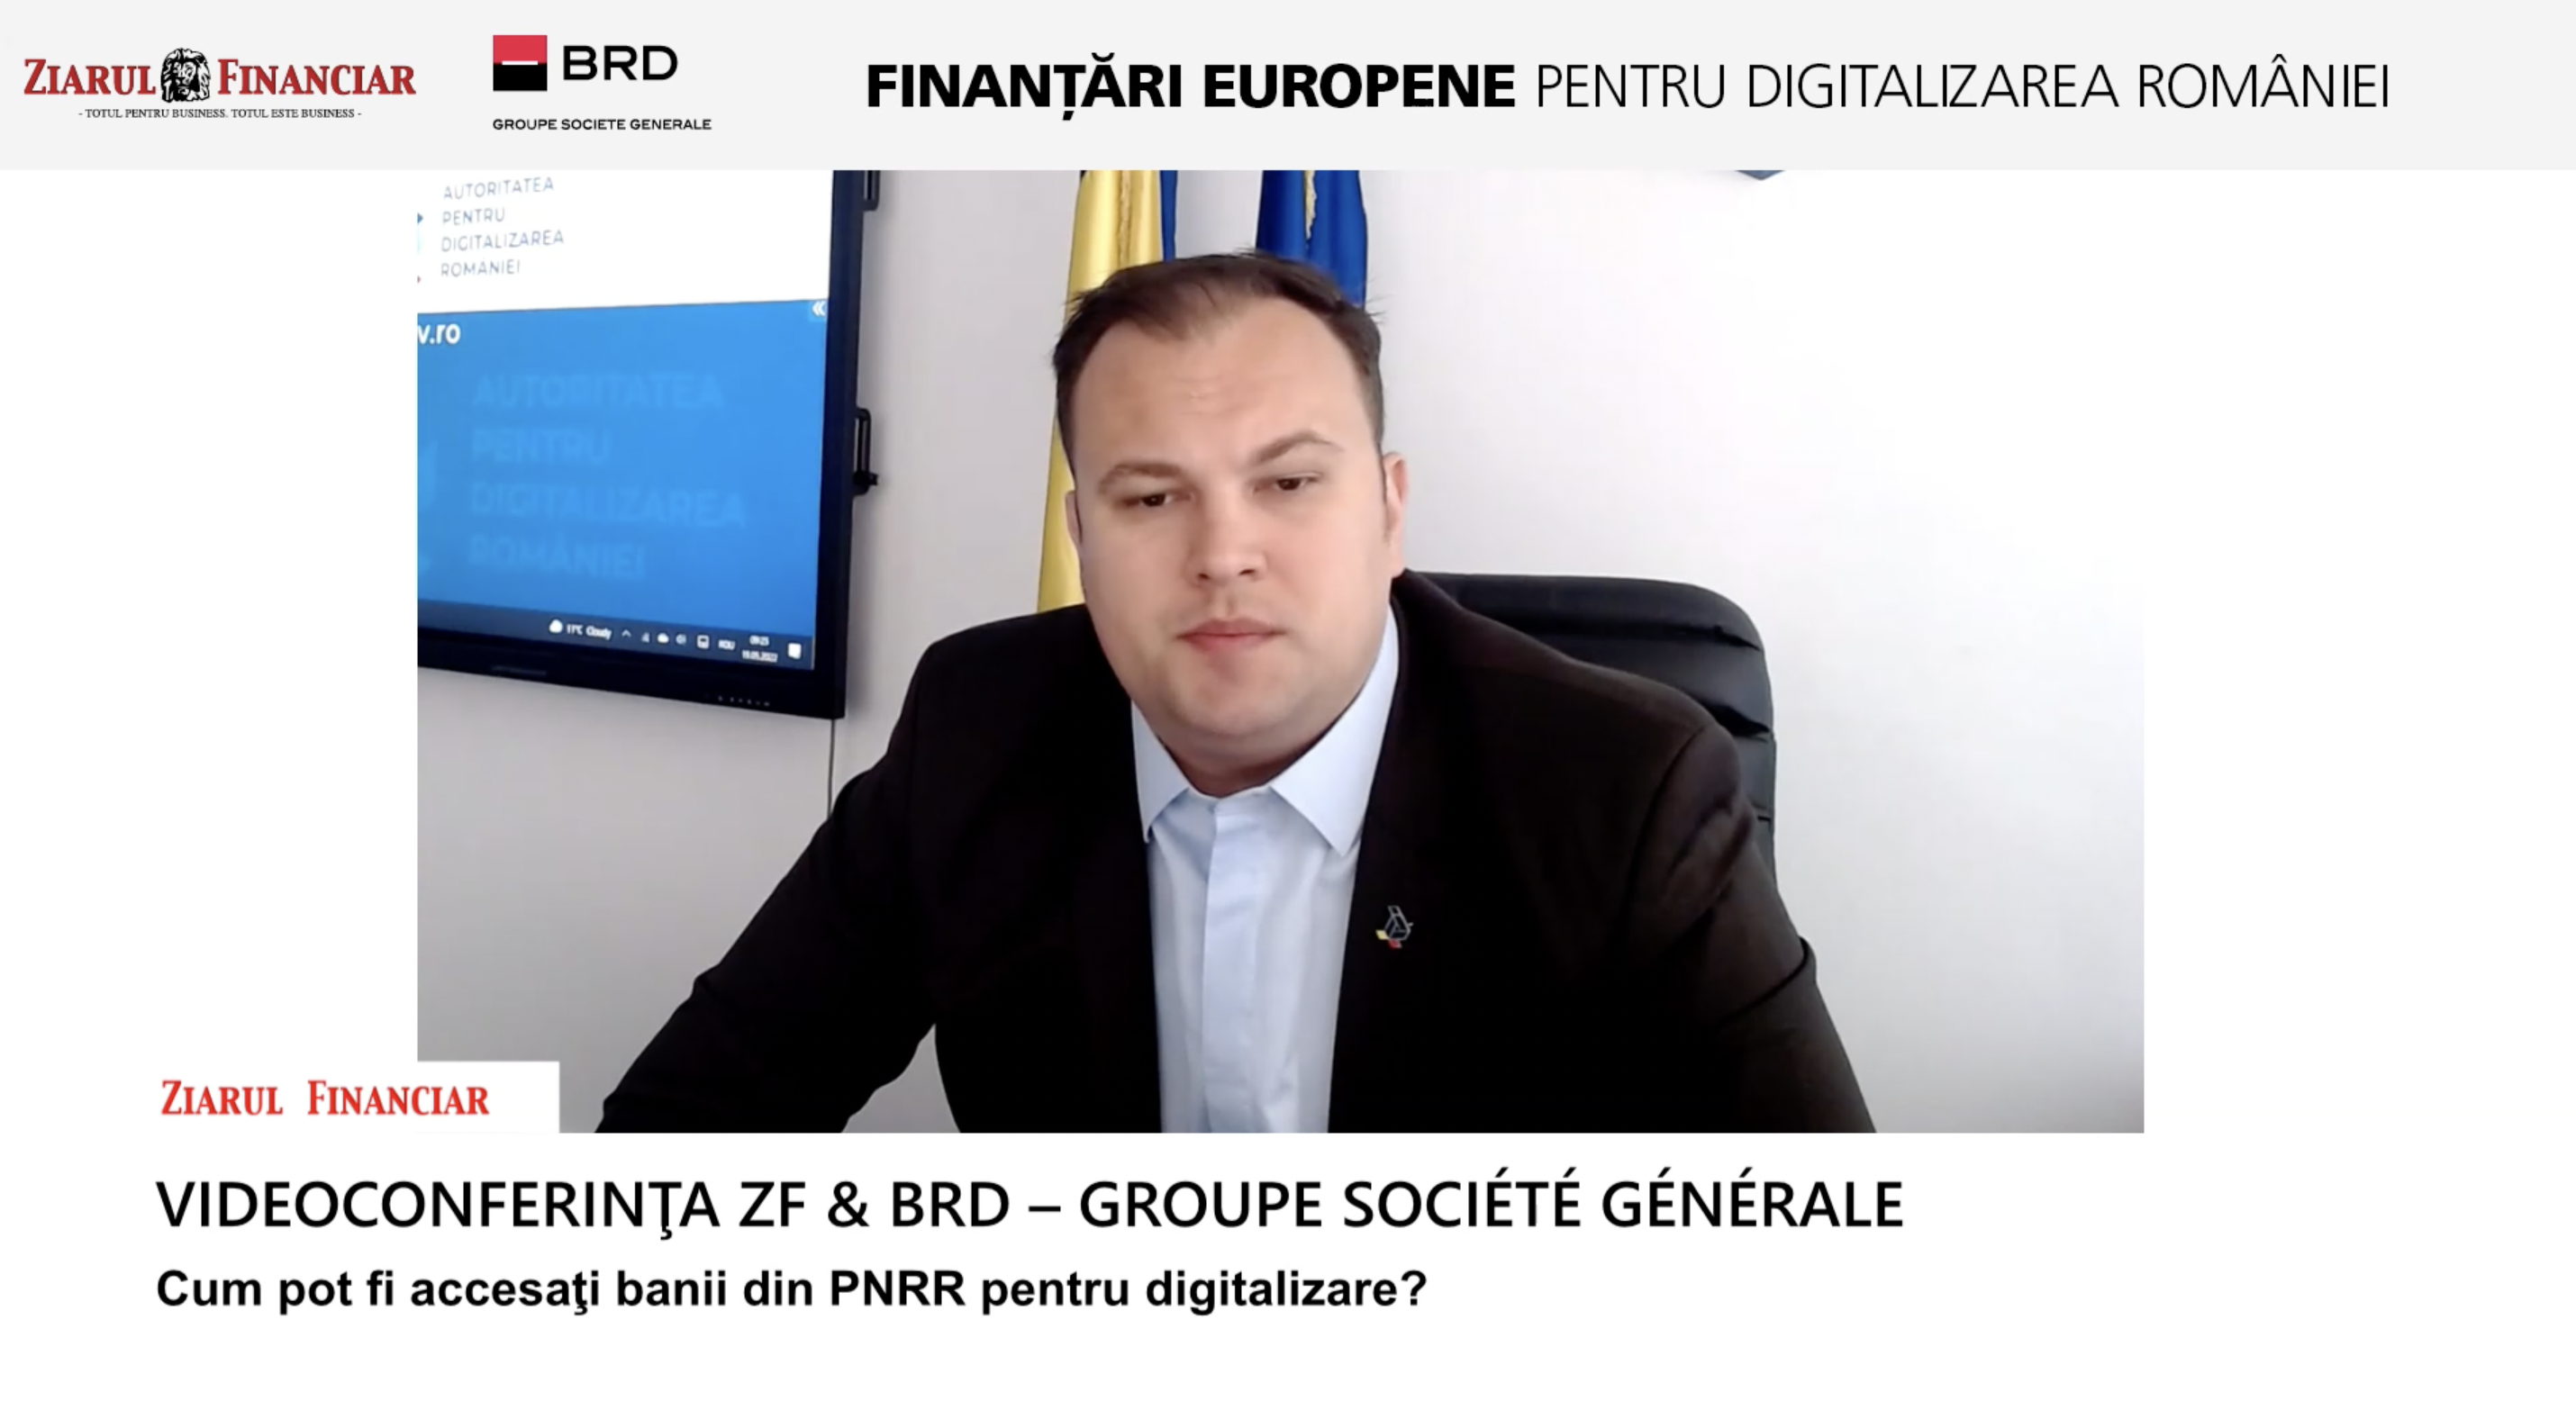  Octavian Oprea, Autoritatea pentru Digitalizarea României: În componenta C9 pentru digitalizare din PNRR, IMM-urile vor avea posibilitatea să semneze până la 5.400 de contracte de finanţare pentru transformarea digitală şi tehnologică